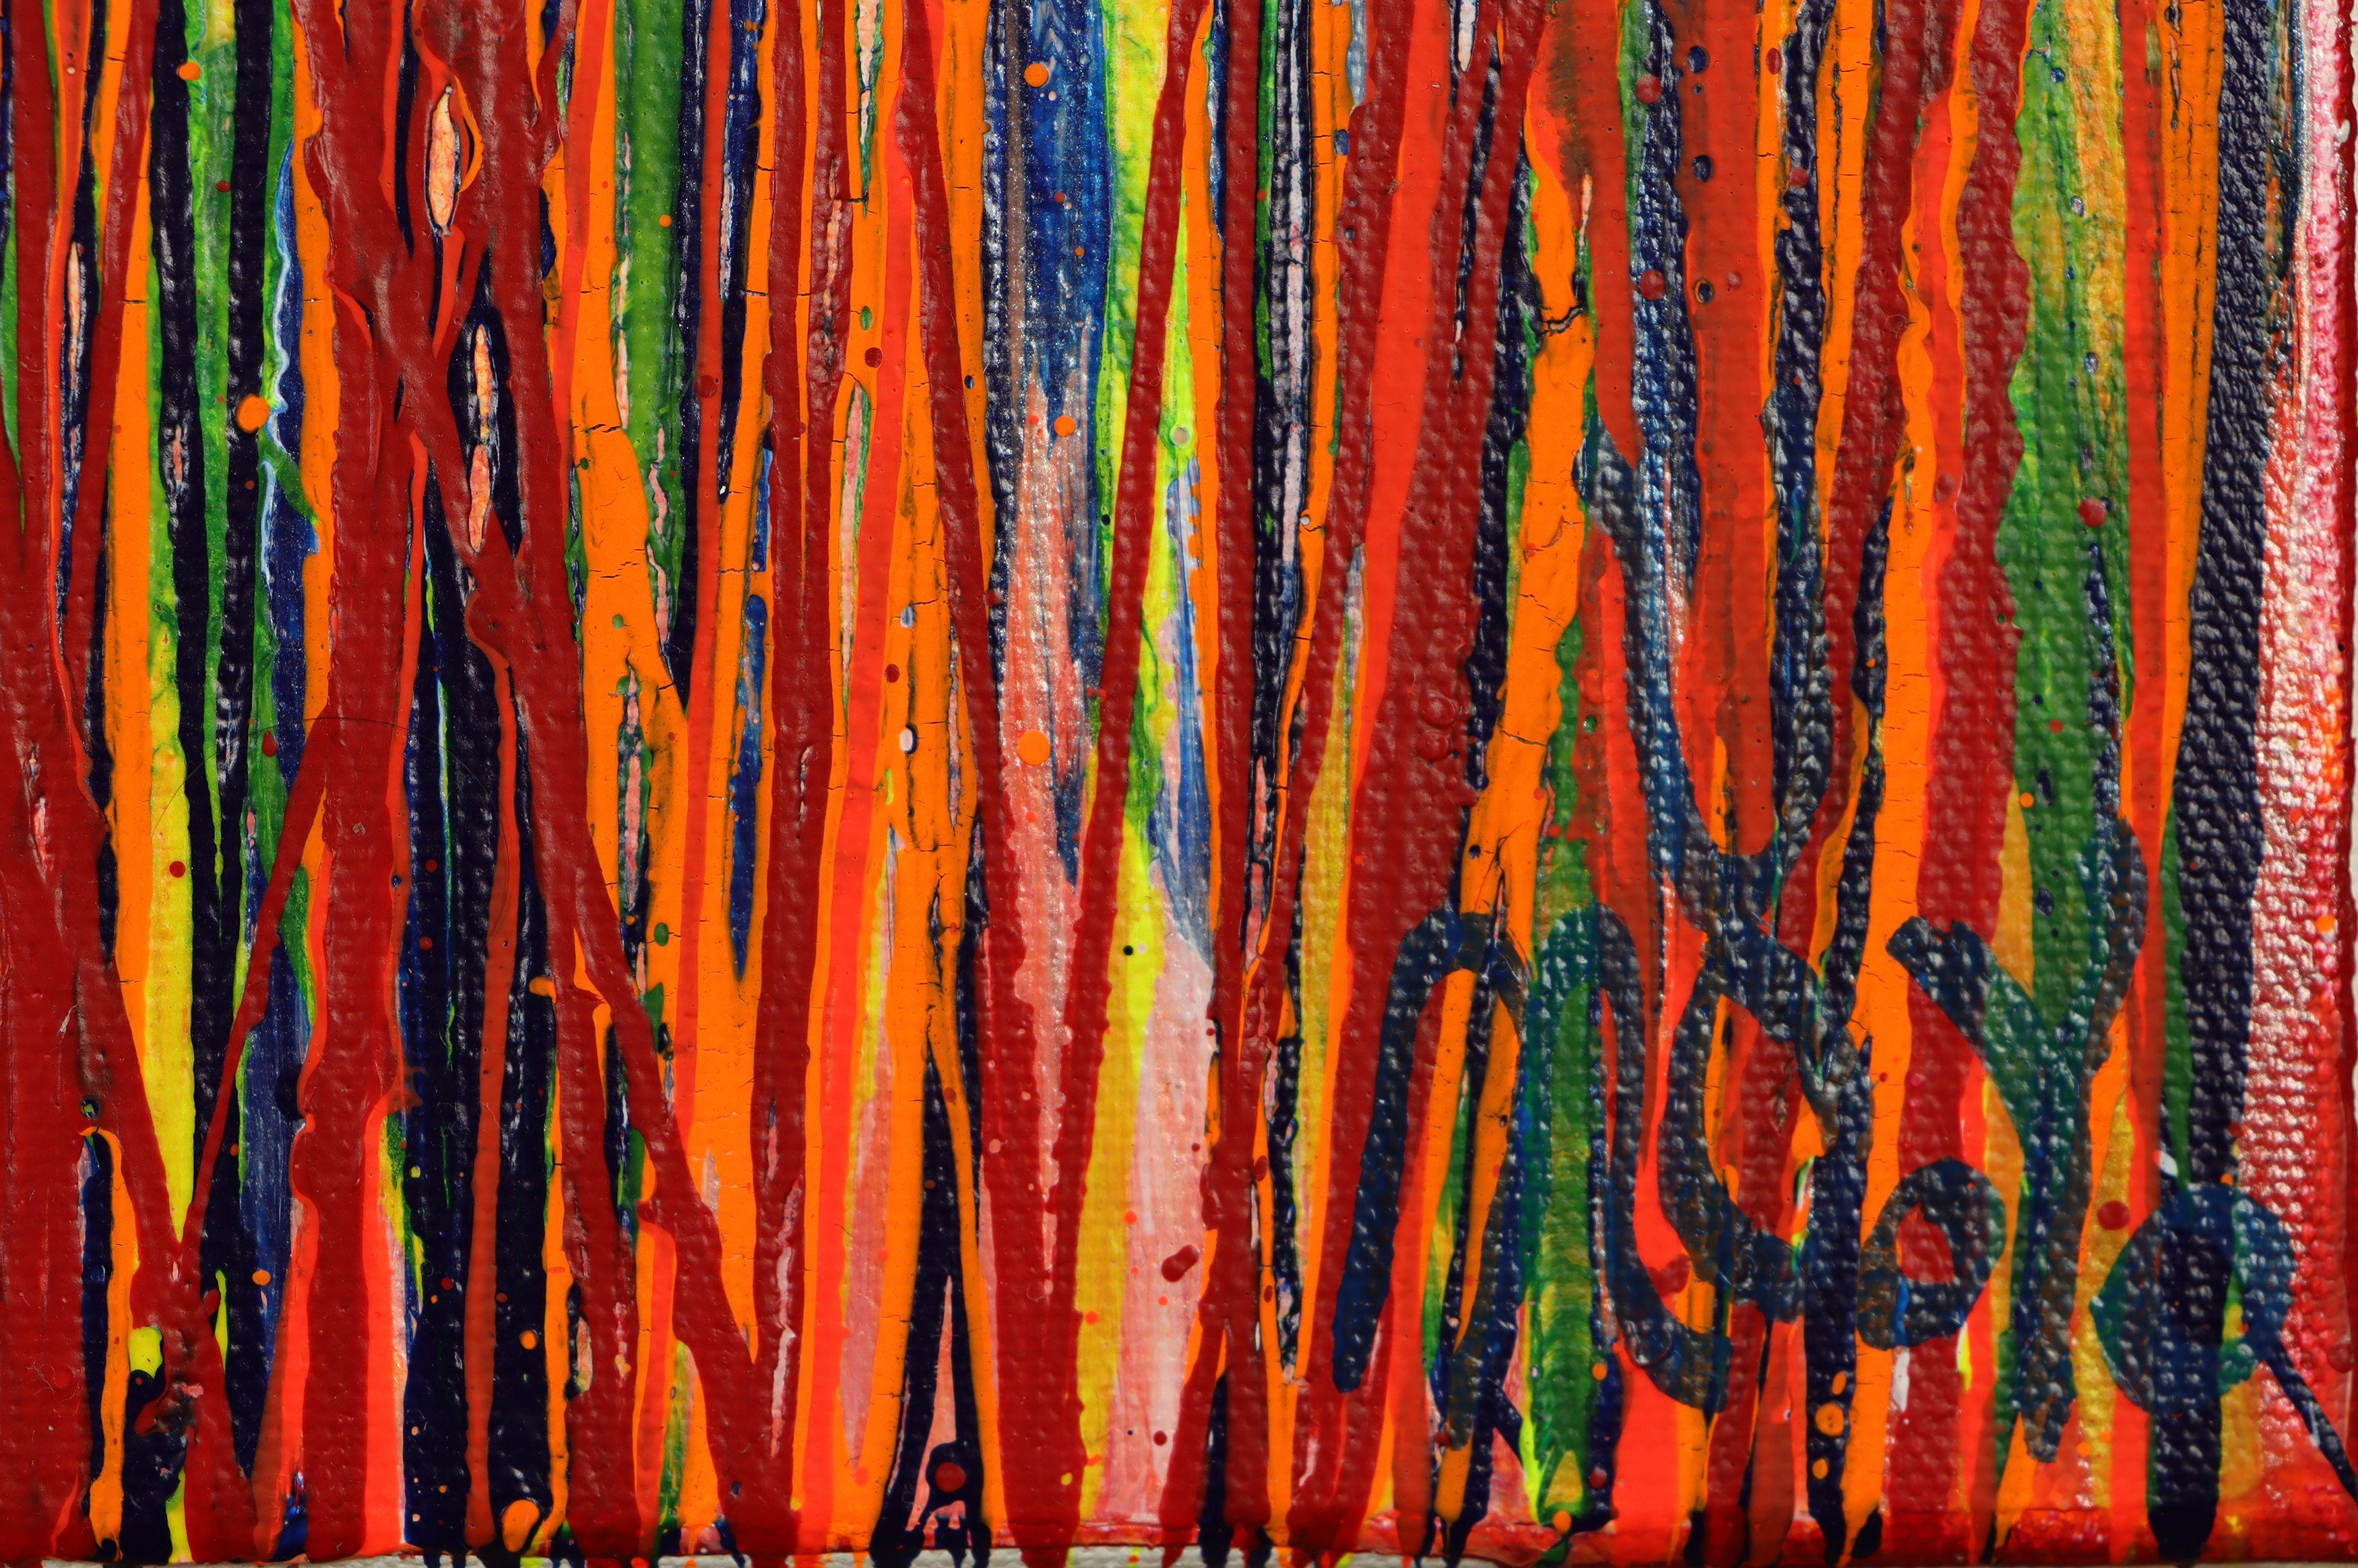 Gemälde: Acryl auf Leinwand.    Ausdrucksstarkes, modernes, abstraktes Bild voller Leben, Glanz und Schimmer! inspiriert von der Natur. Schattierungen von fluoreszierendem Rot, Gelb, Blau und Orange auf mehrfarbigem Hintergrund. Vorne mit blauer